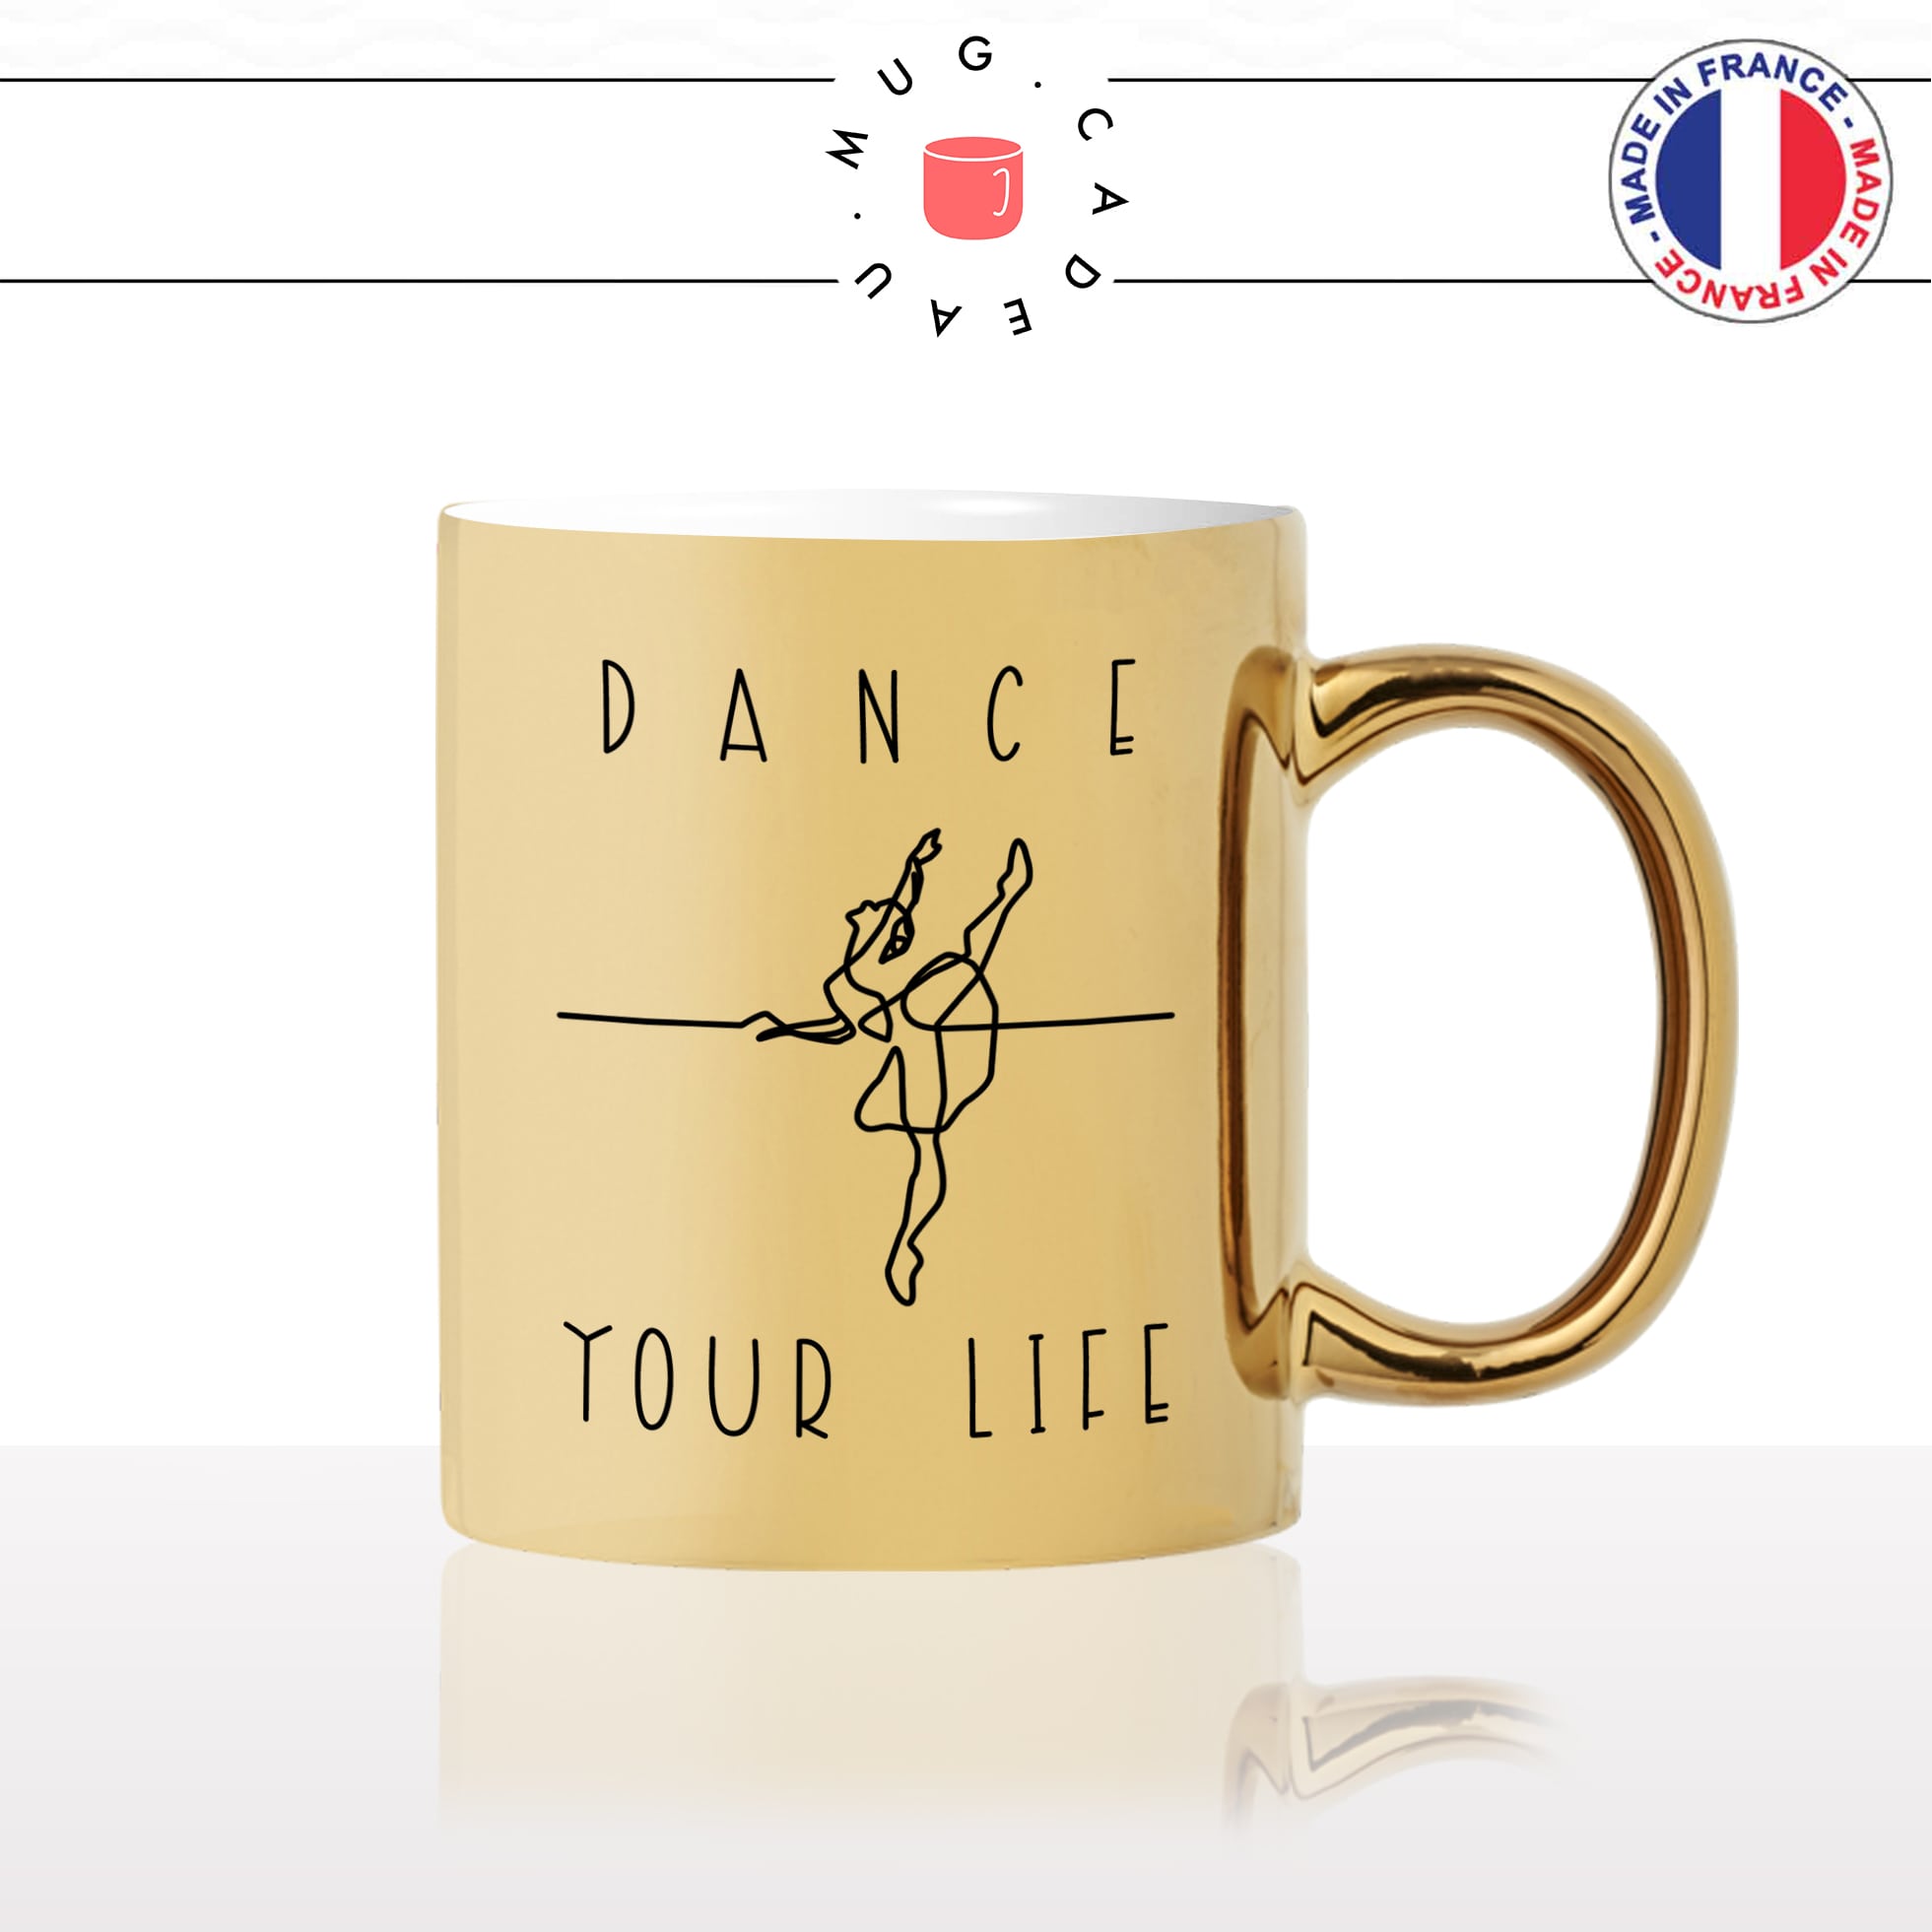 mug-tasse-gold-doré-or-dance-your-life-danse-danseuse-ballerine-femme-classic-musique-sport-idée-cadeau-fun-original-personnalisé-café-thé2-min